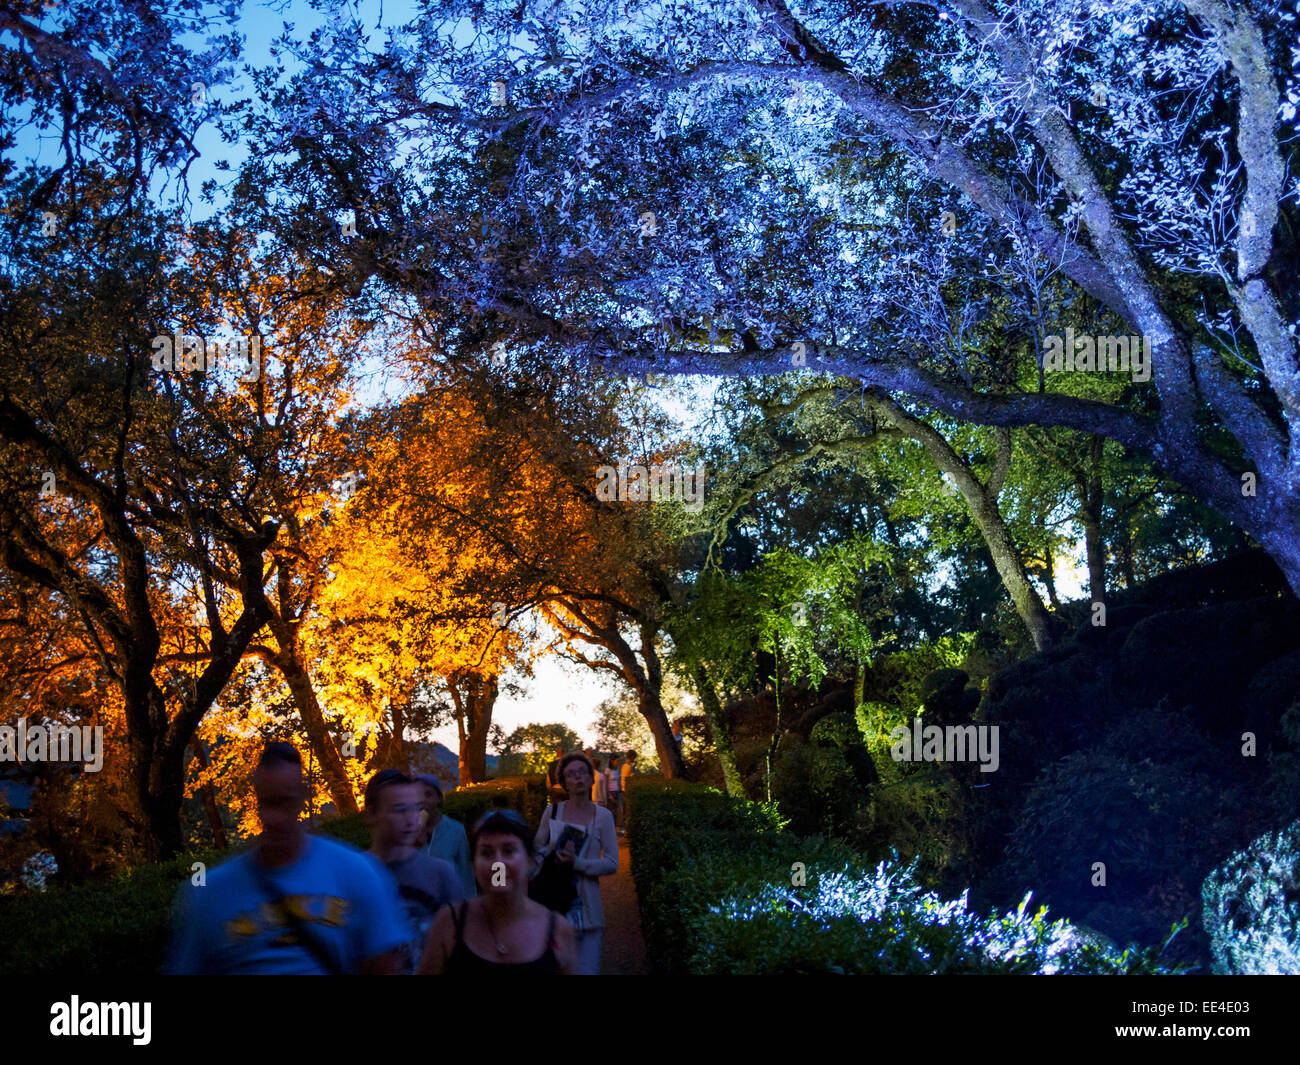 Les visiteurs d'un soir aux chandelles dans les jardins de Marqueyssac Château promenade à travers les parcs illuminée au crépuscule. Banque D'Images